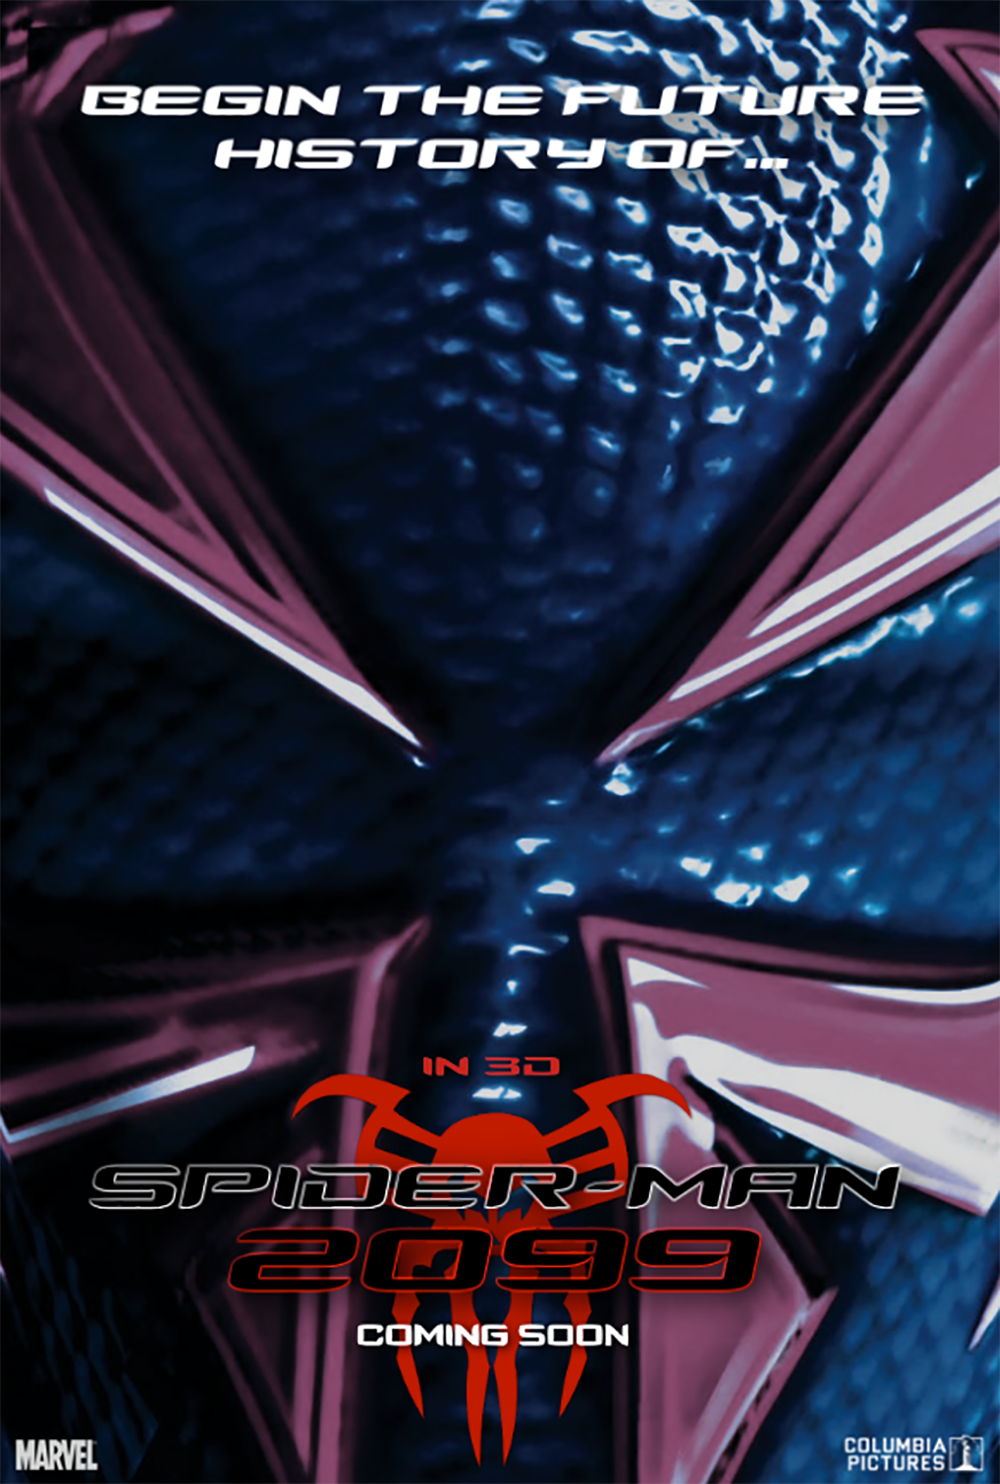 Spider-Man 2099 movie fan poster